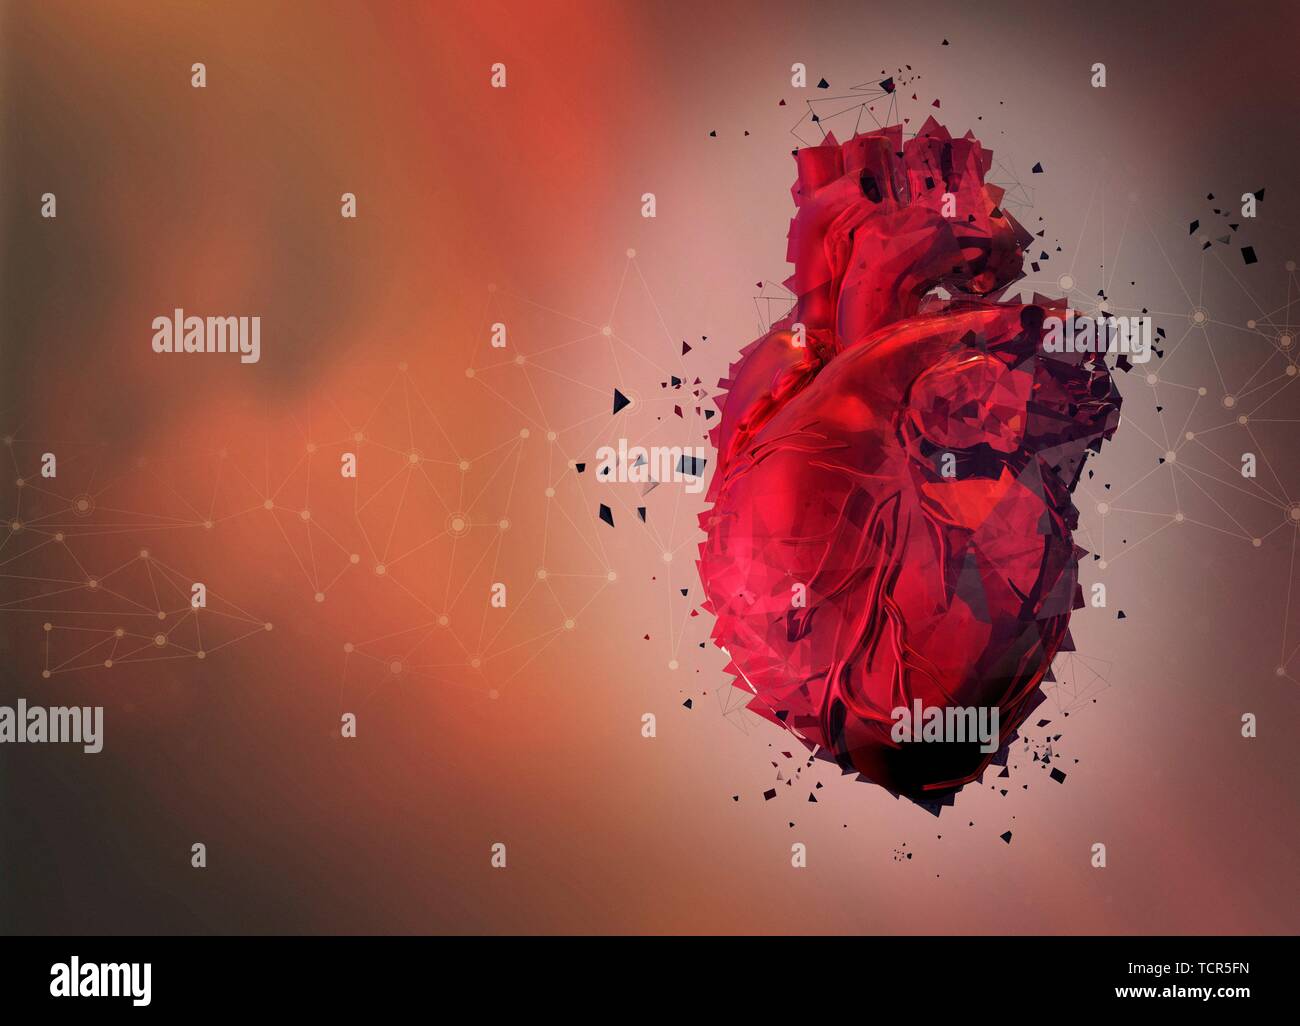 Human heart, illustration Stock Photo